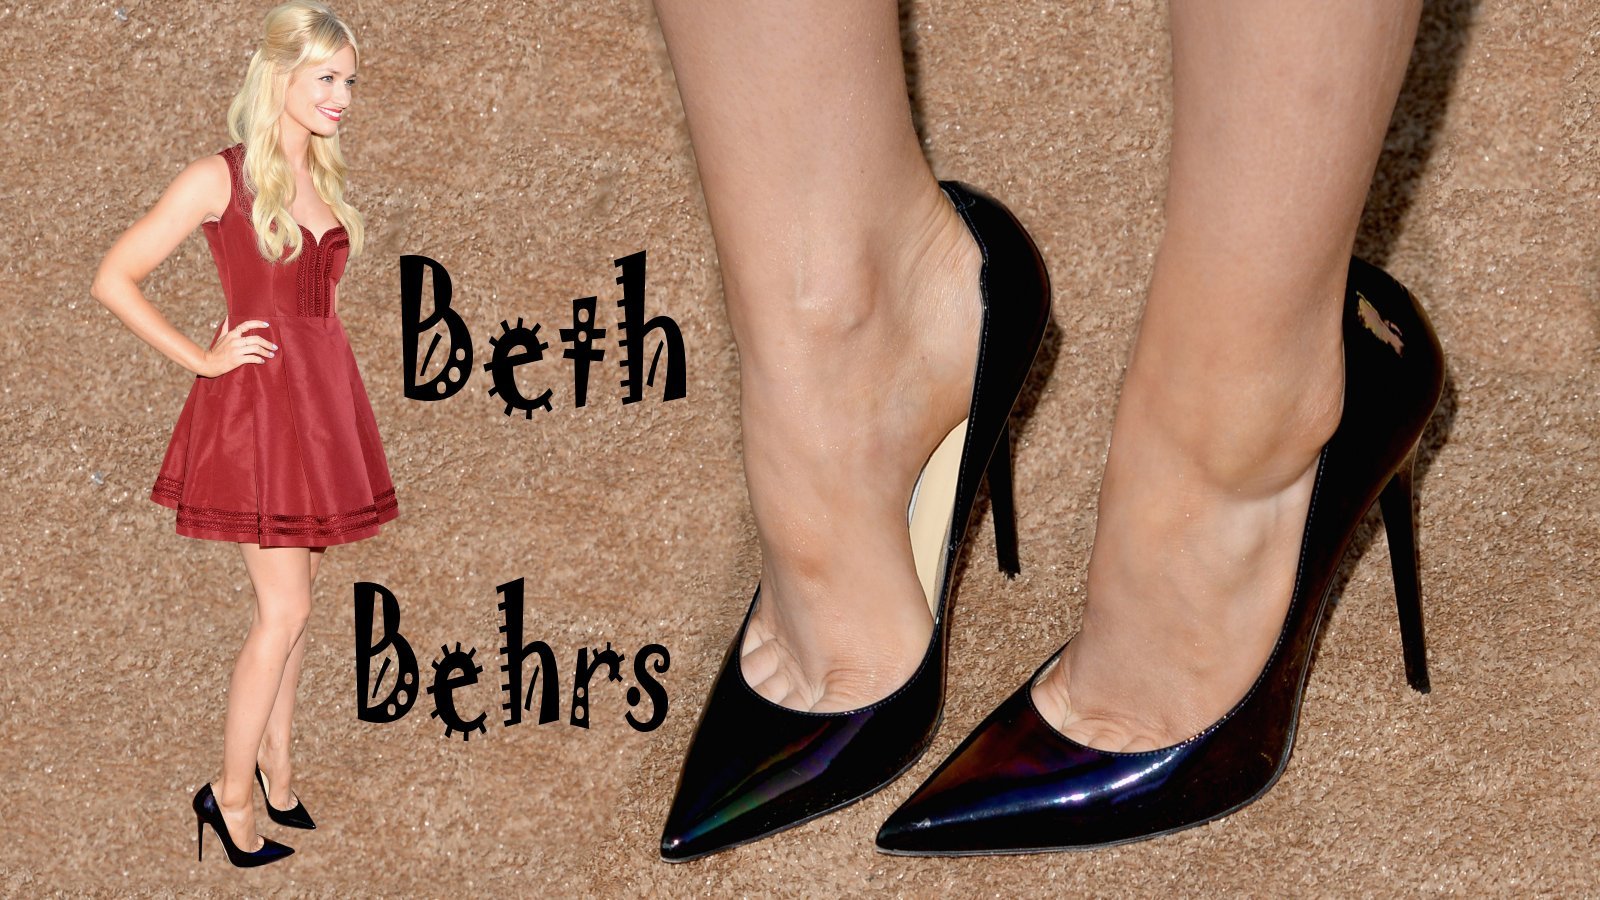 Beth Behrs S Feet